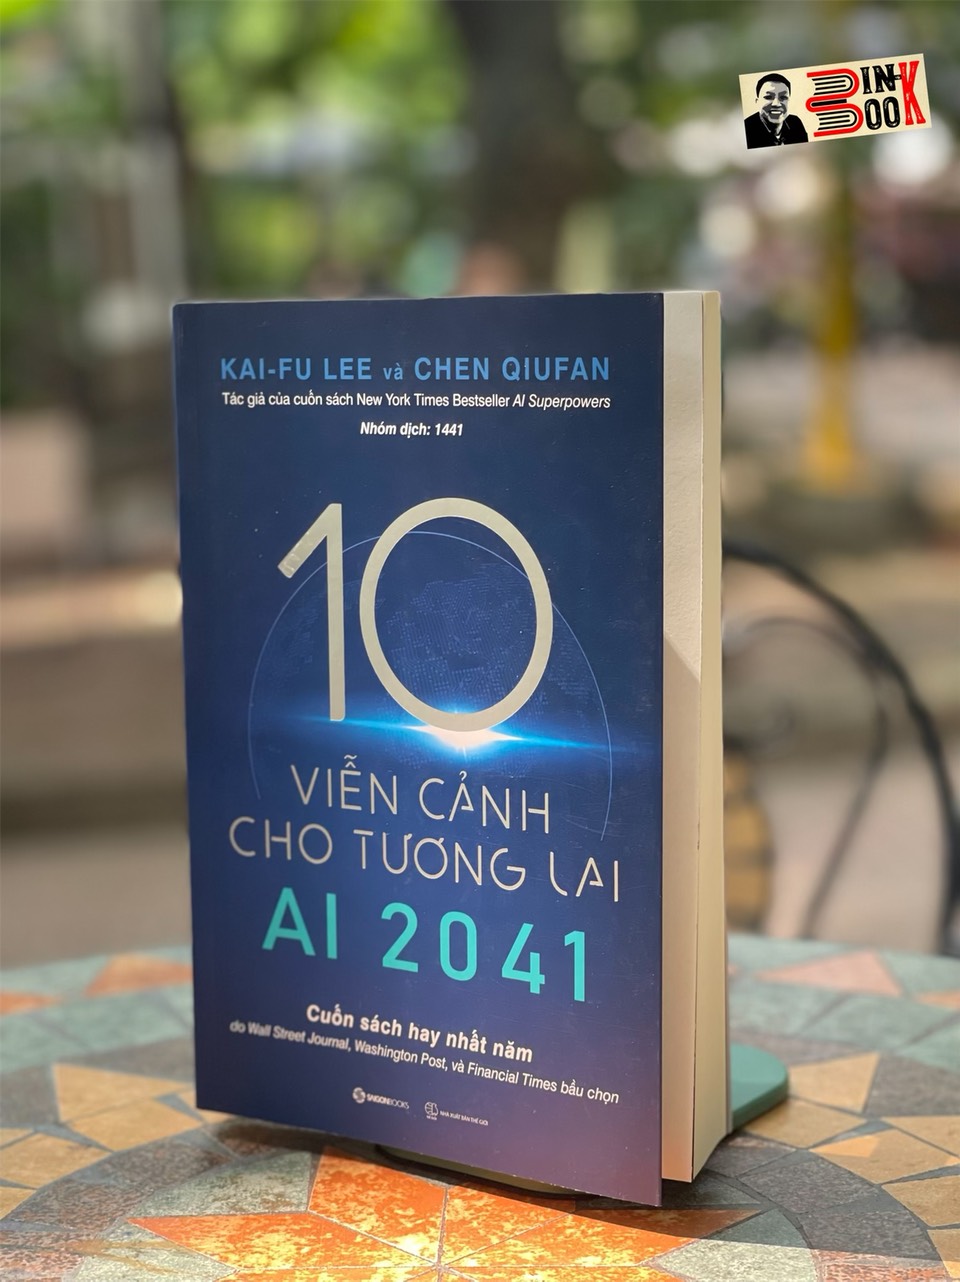 AI 2041 - 10 VIỄN CẢNH CHO TƯƠNG LAI - Chen Qiufan ,Fu Lee - Nhóm dịch 1441 - Saigonbooks - NXB Thế Giới